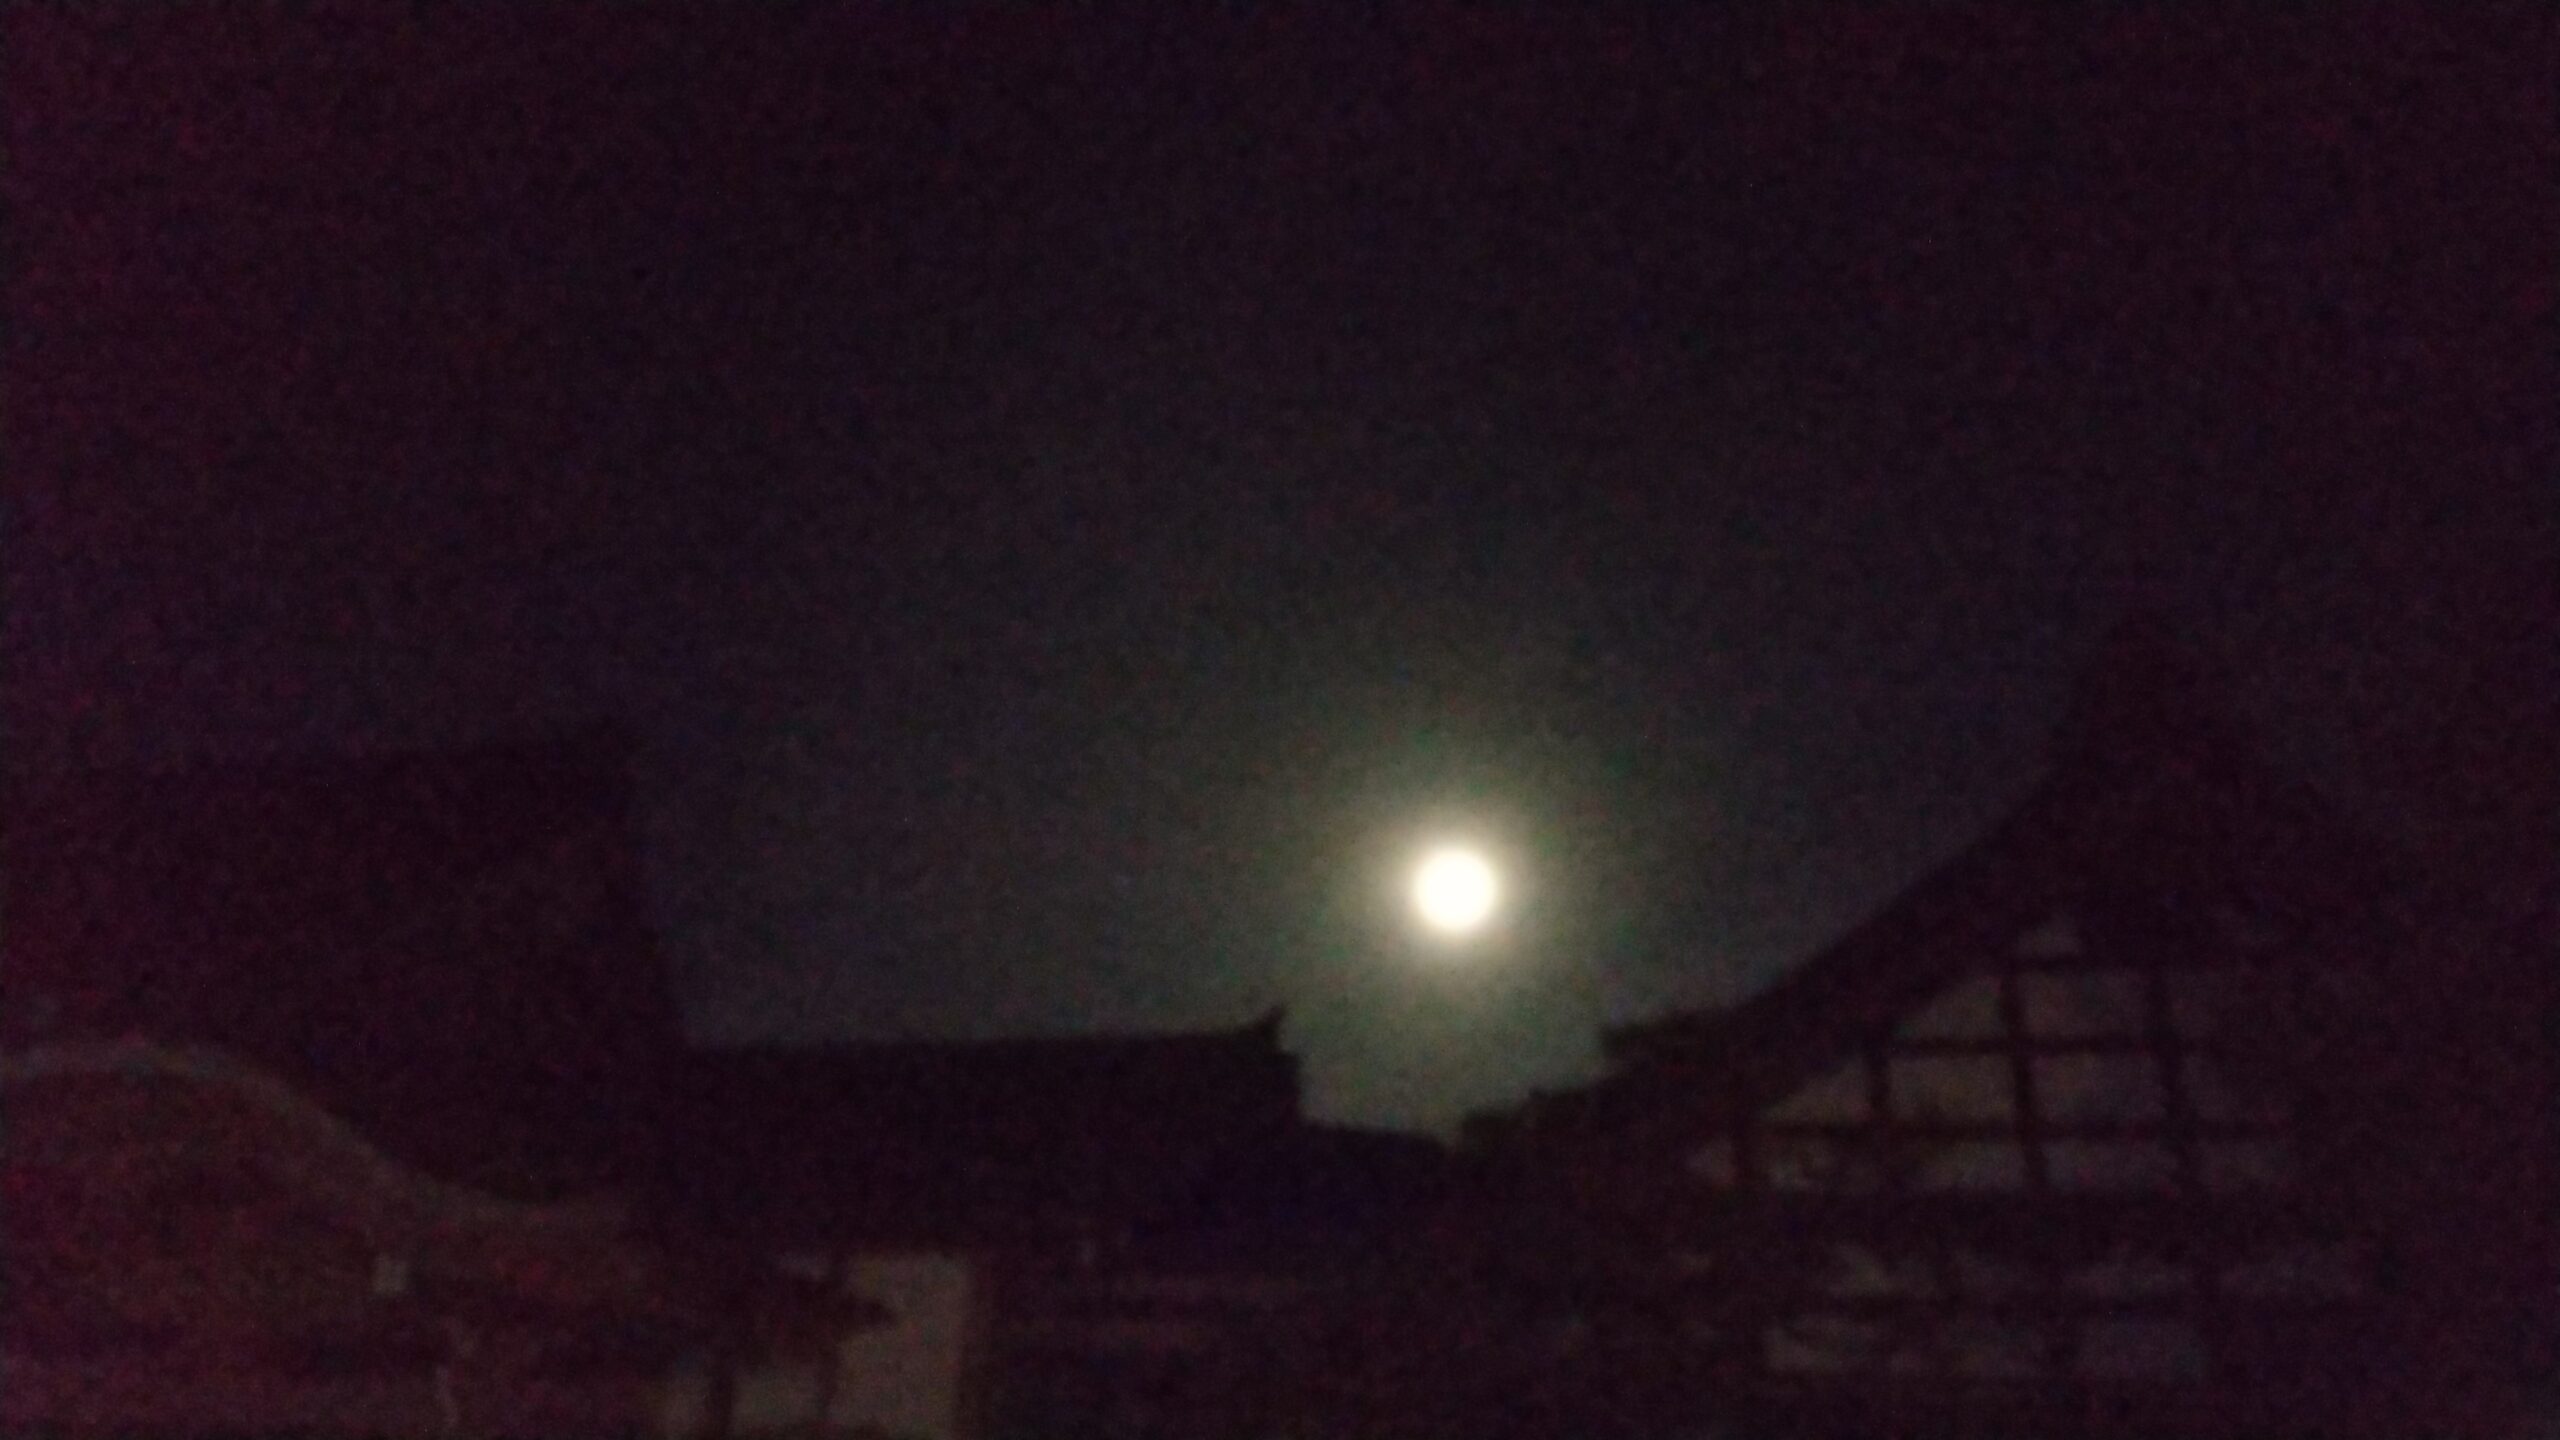 お月さまの写真